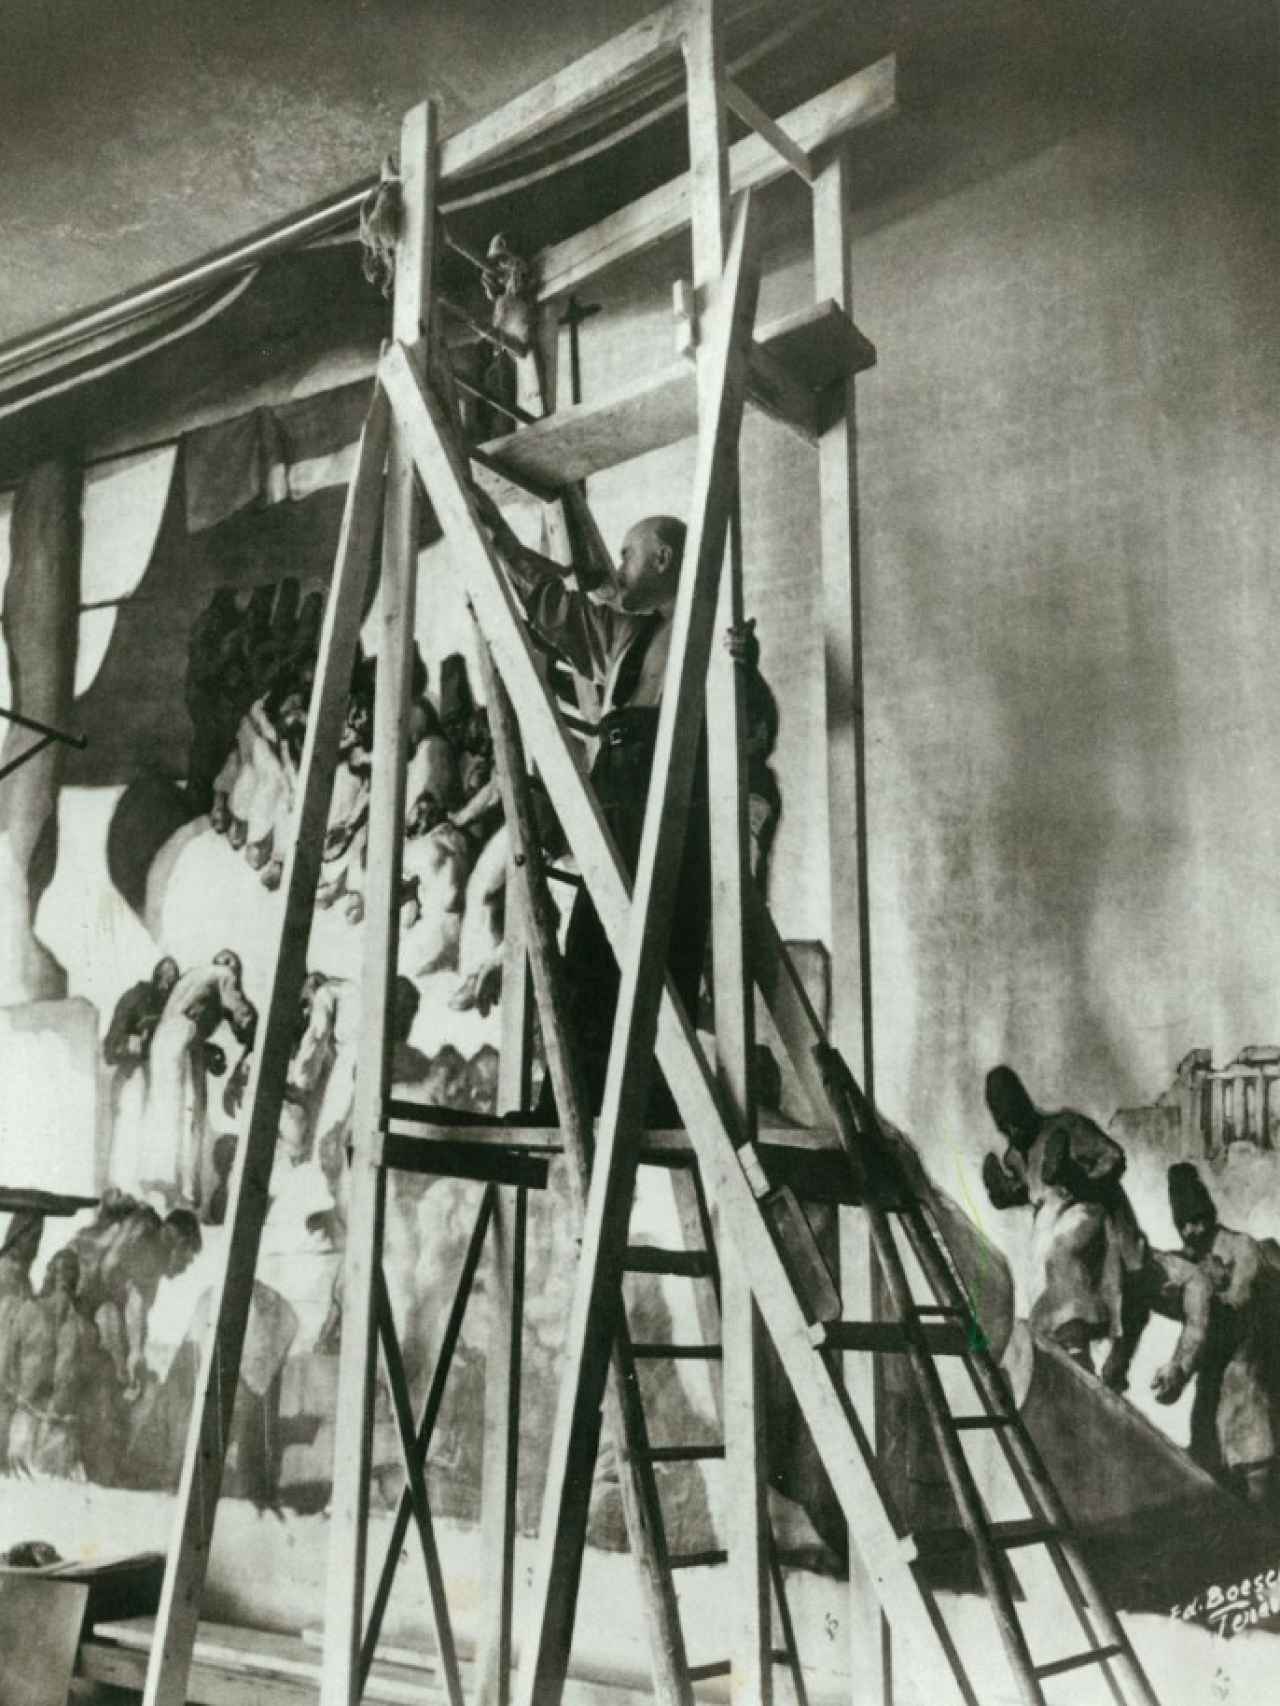 Josep María Sert en acción, pintando el encargo de las Naciones Unidas.